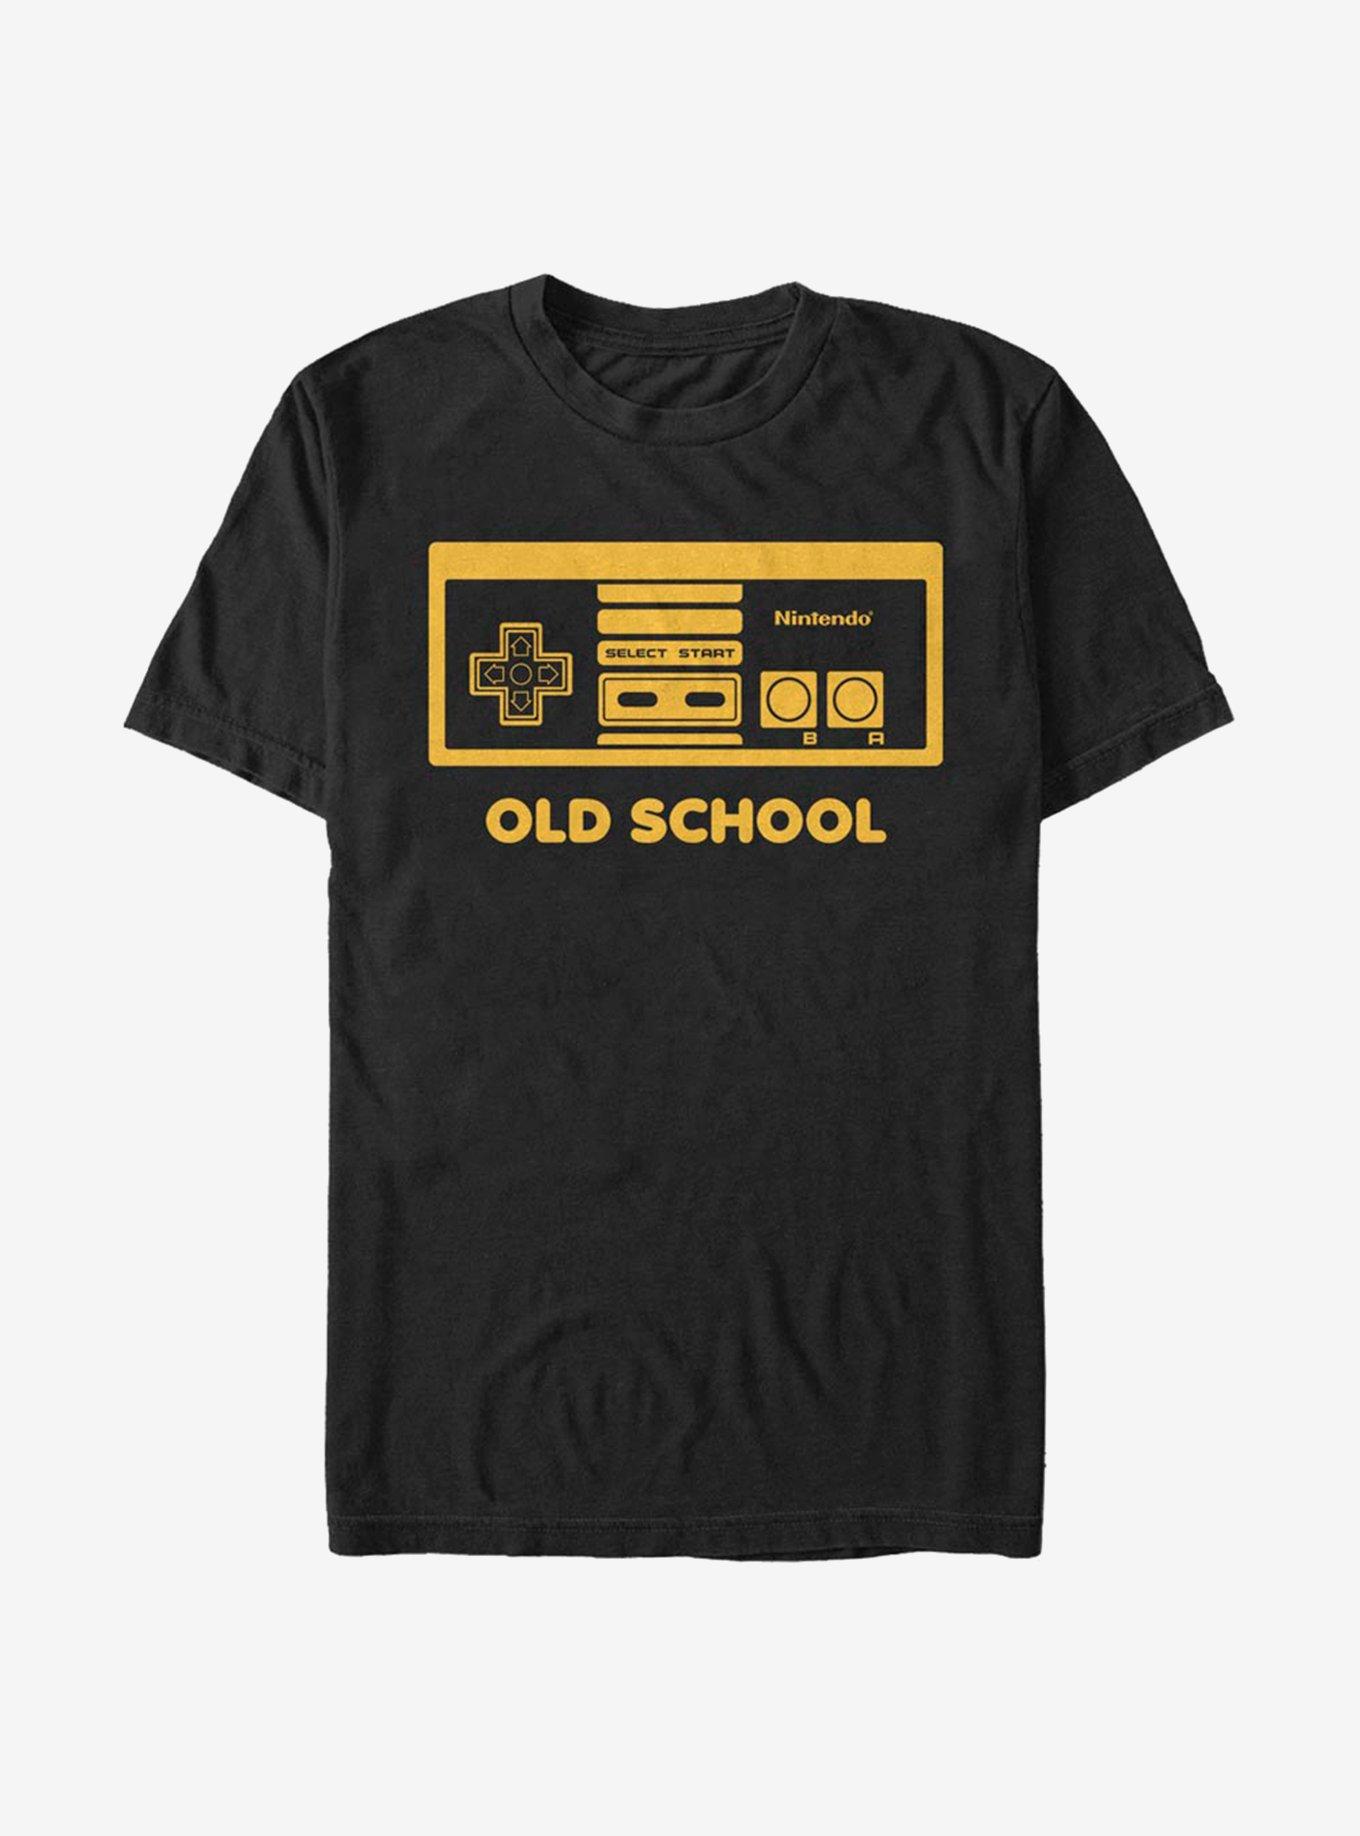 Nintendo NES Old School T-Shirt, BLACK, hi-res